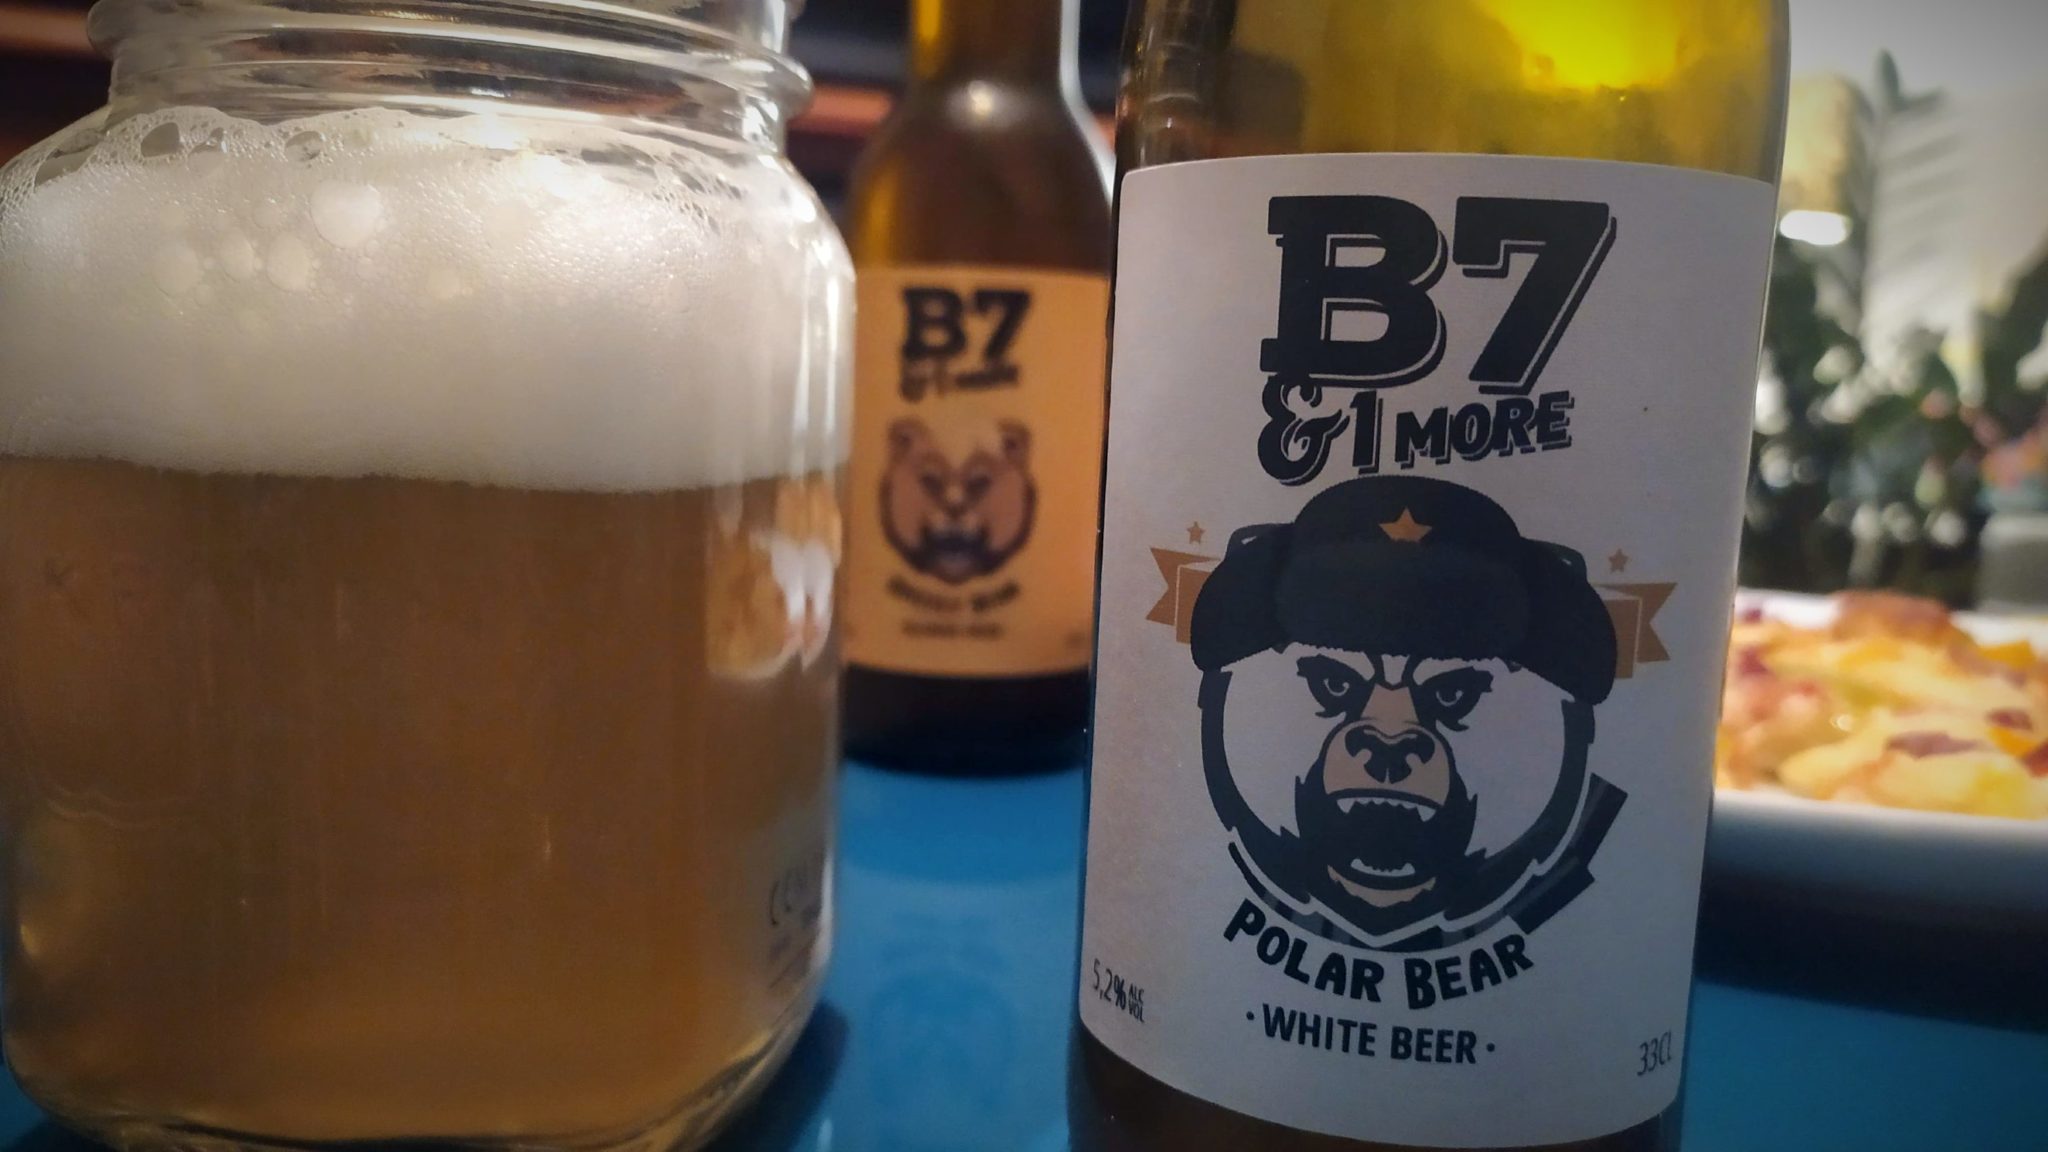 Dégustation de la bière B7&1 MORE